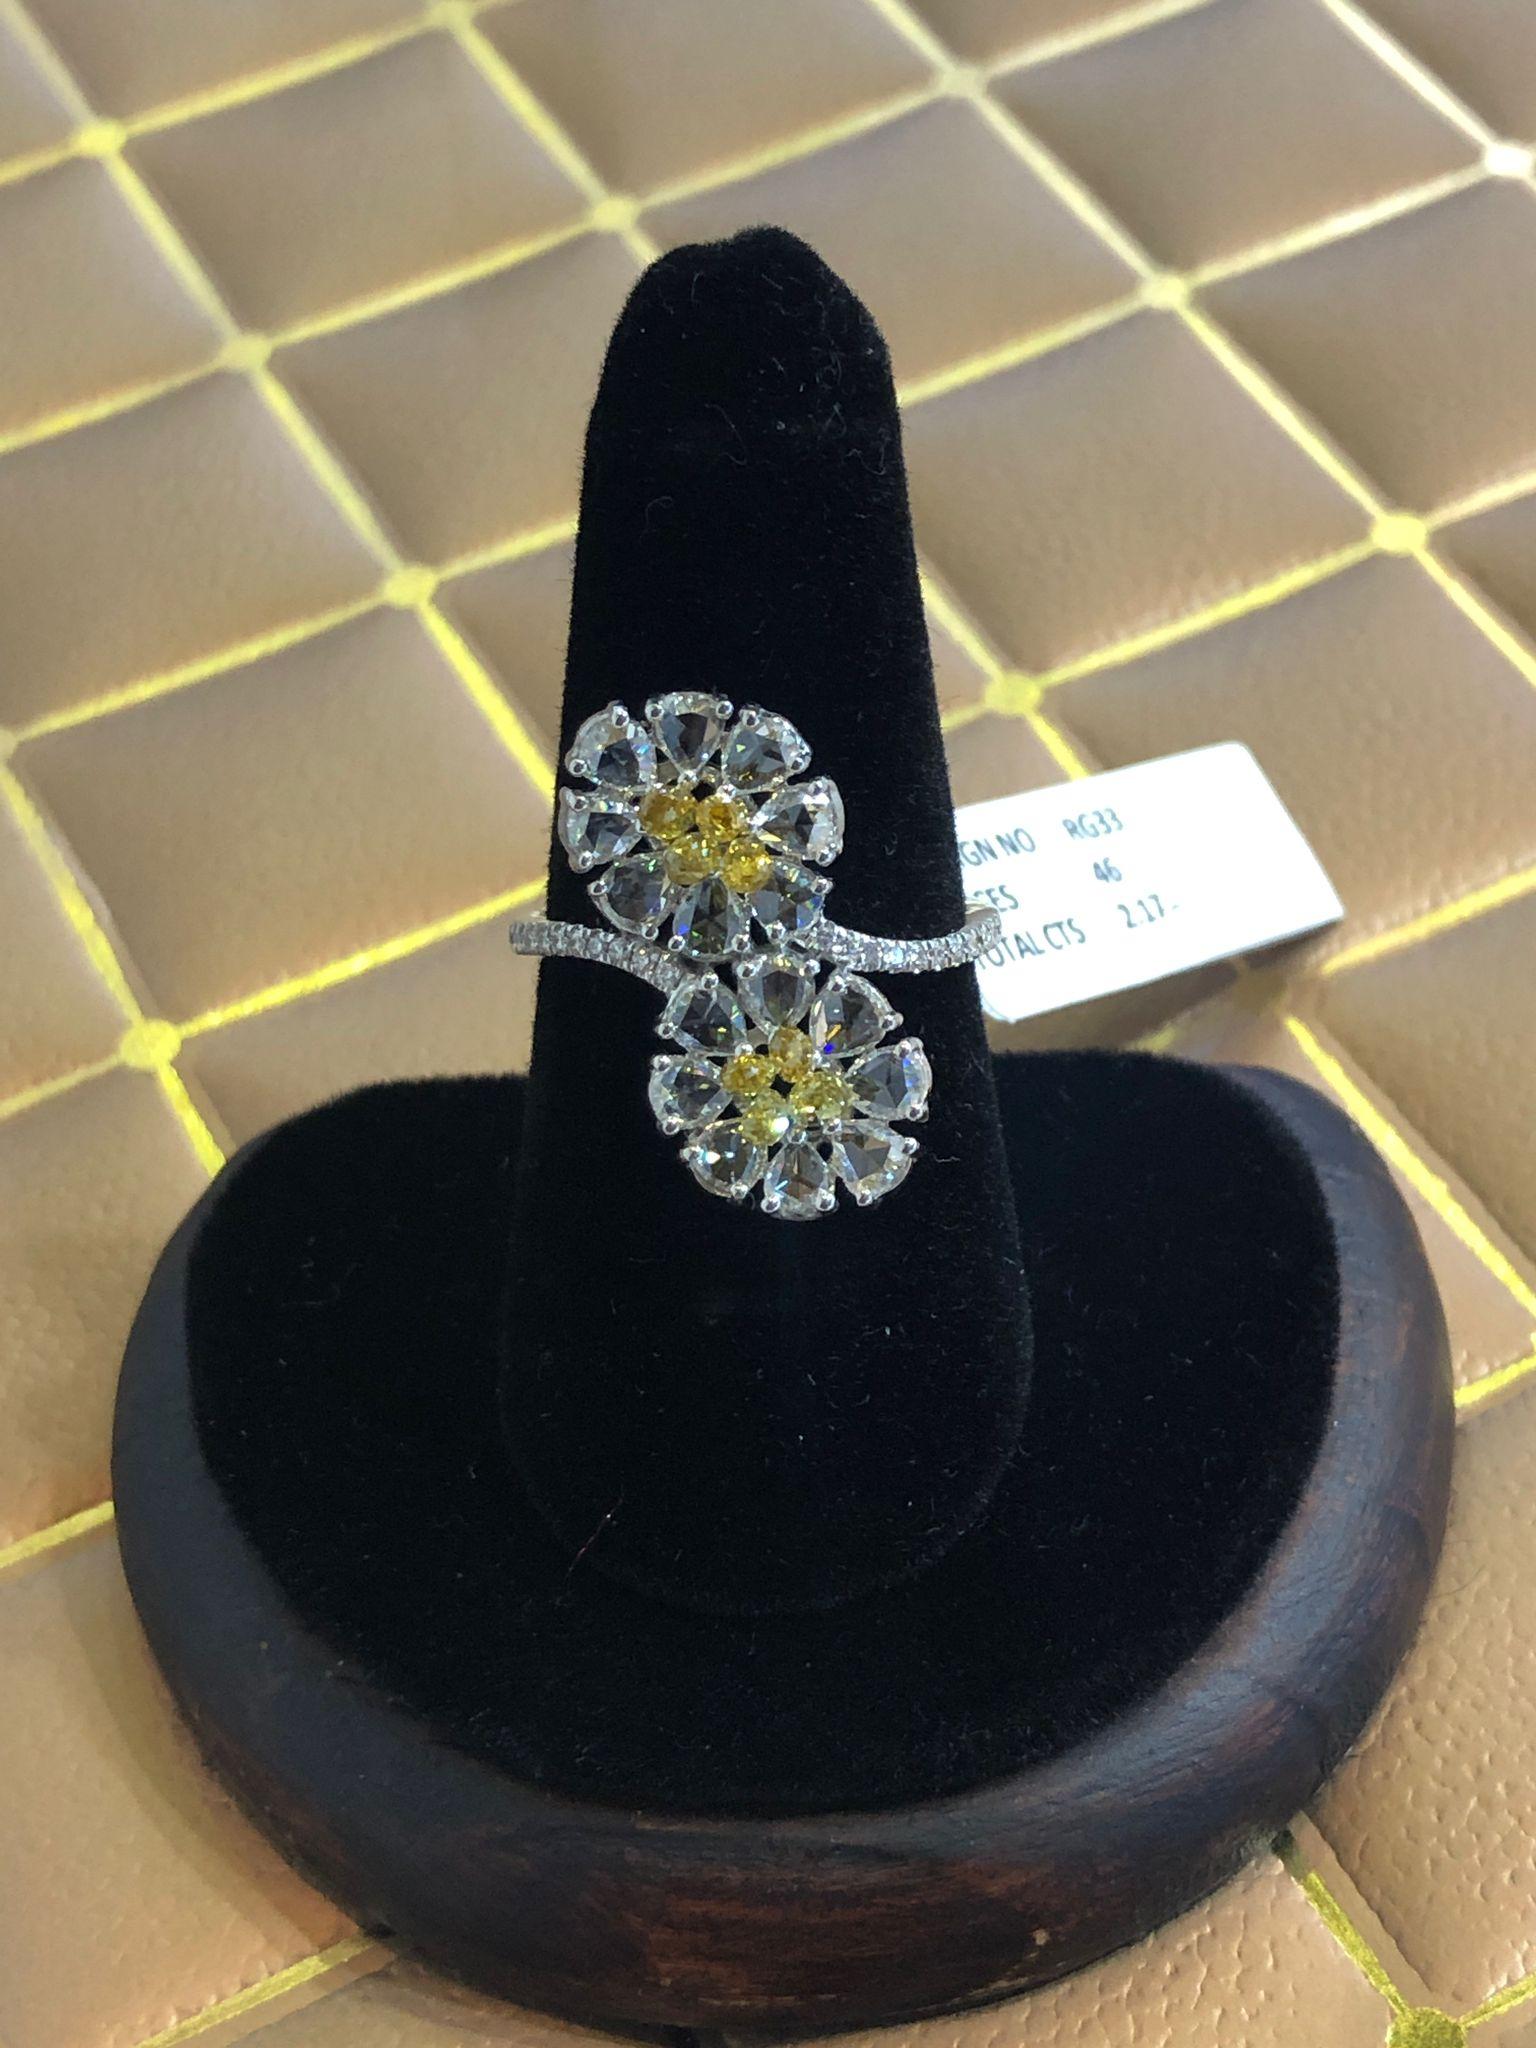 PANIM Rosecut & Fancy Brio Diamant Jasmin Style Ring aus 18 Karat Weißgold

Inspiriert von der Natur,
Set in 18K Weißgold mit Diamant-Rosetten und ausgefallenen Brioletten

Farbe FGH
Qualität VS

Kontaktieren Sie uns auf dieser Plattform, um weitere